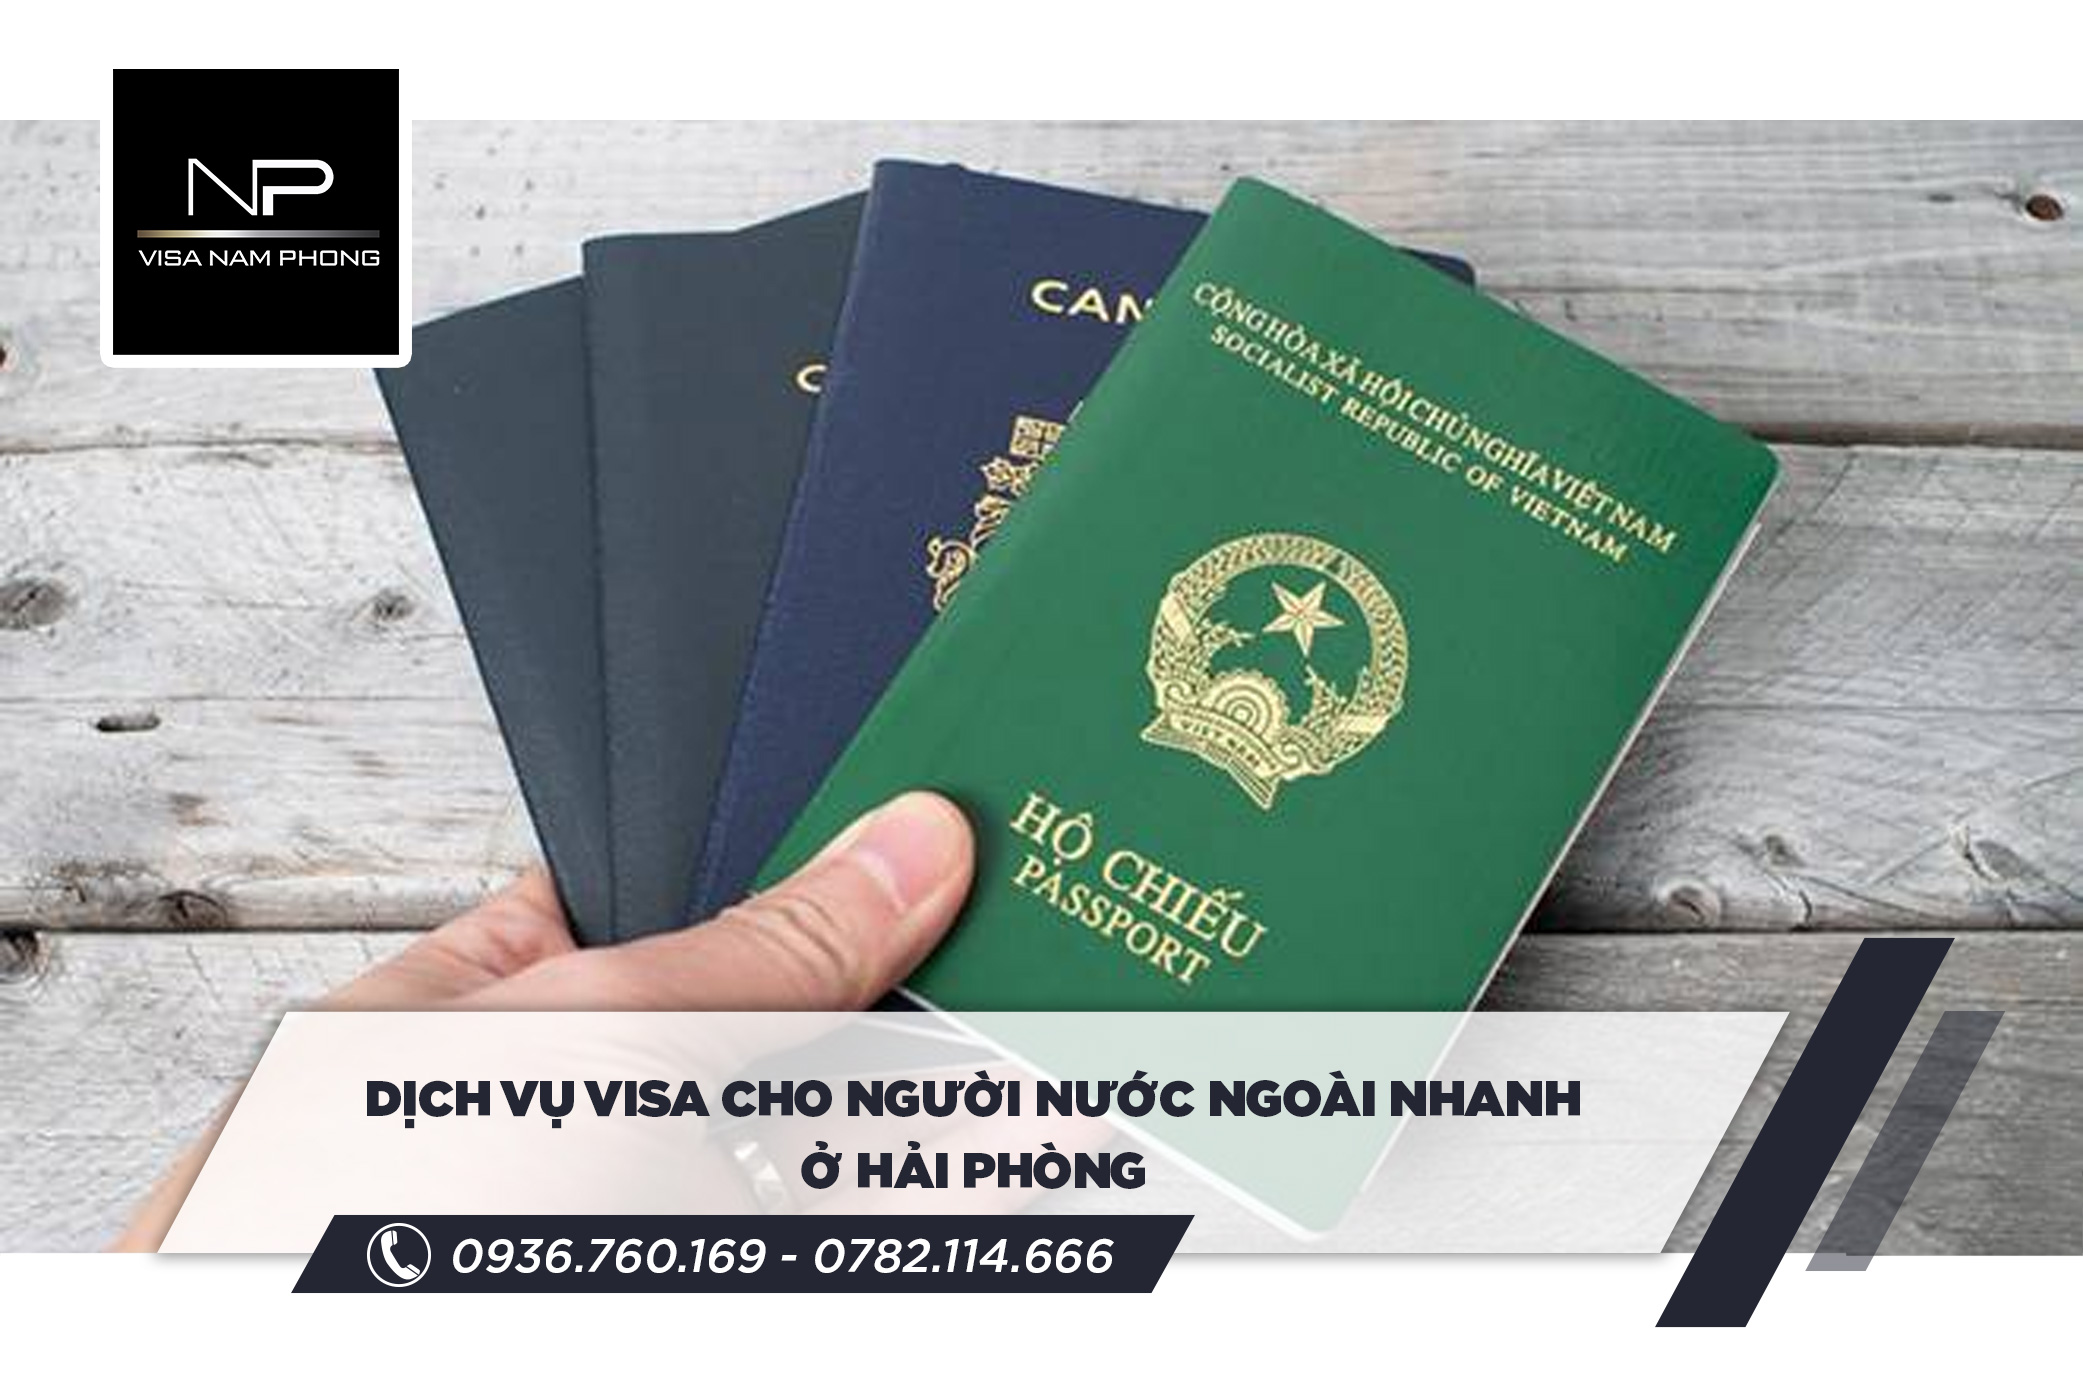 dịch vụ visa cho người nước ngoài nhanh ở hải phòng